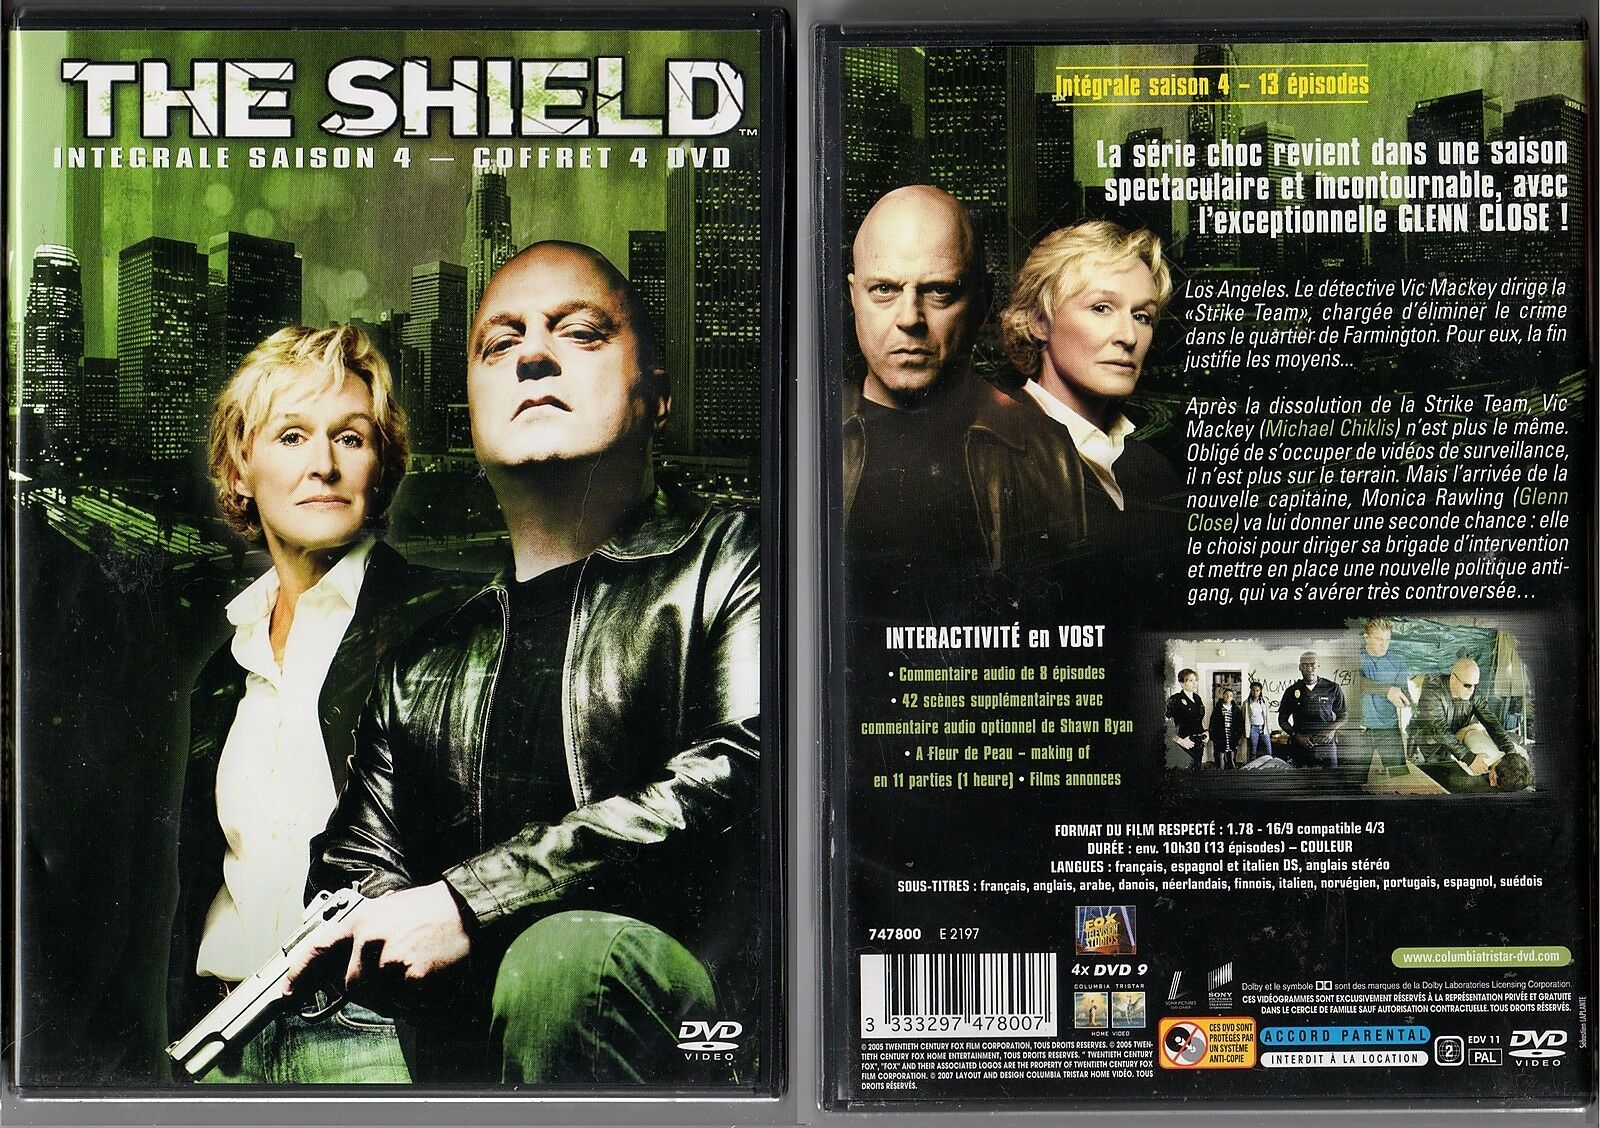 Jaquette DVD The shield Saison 4